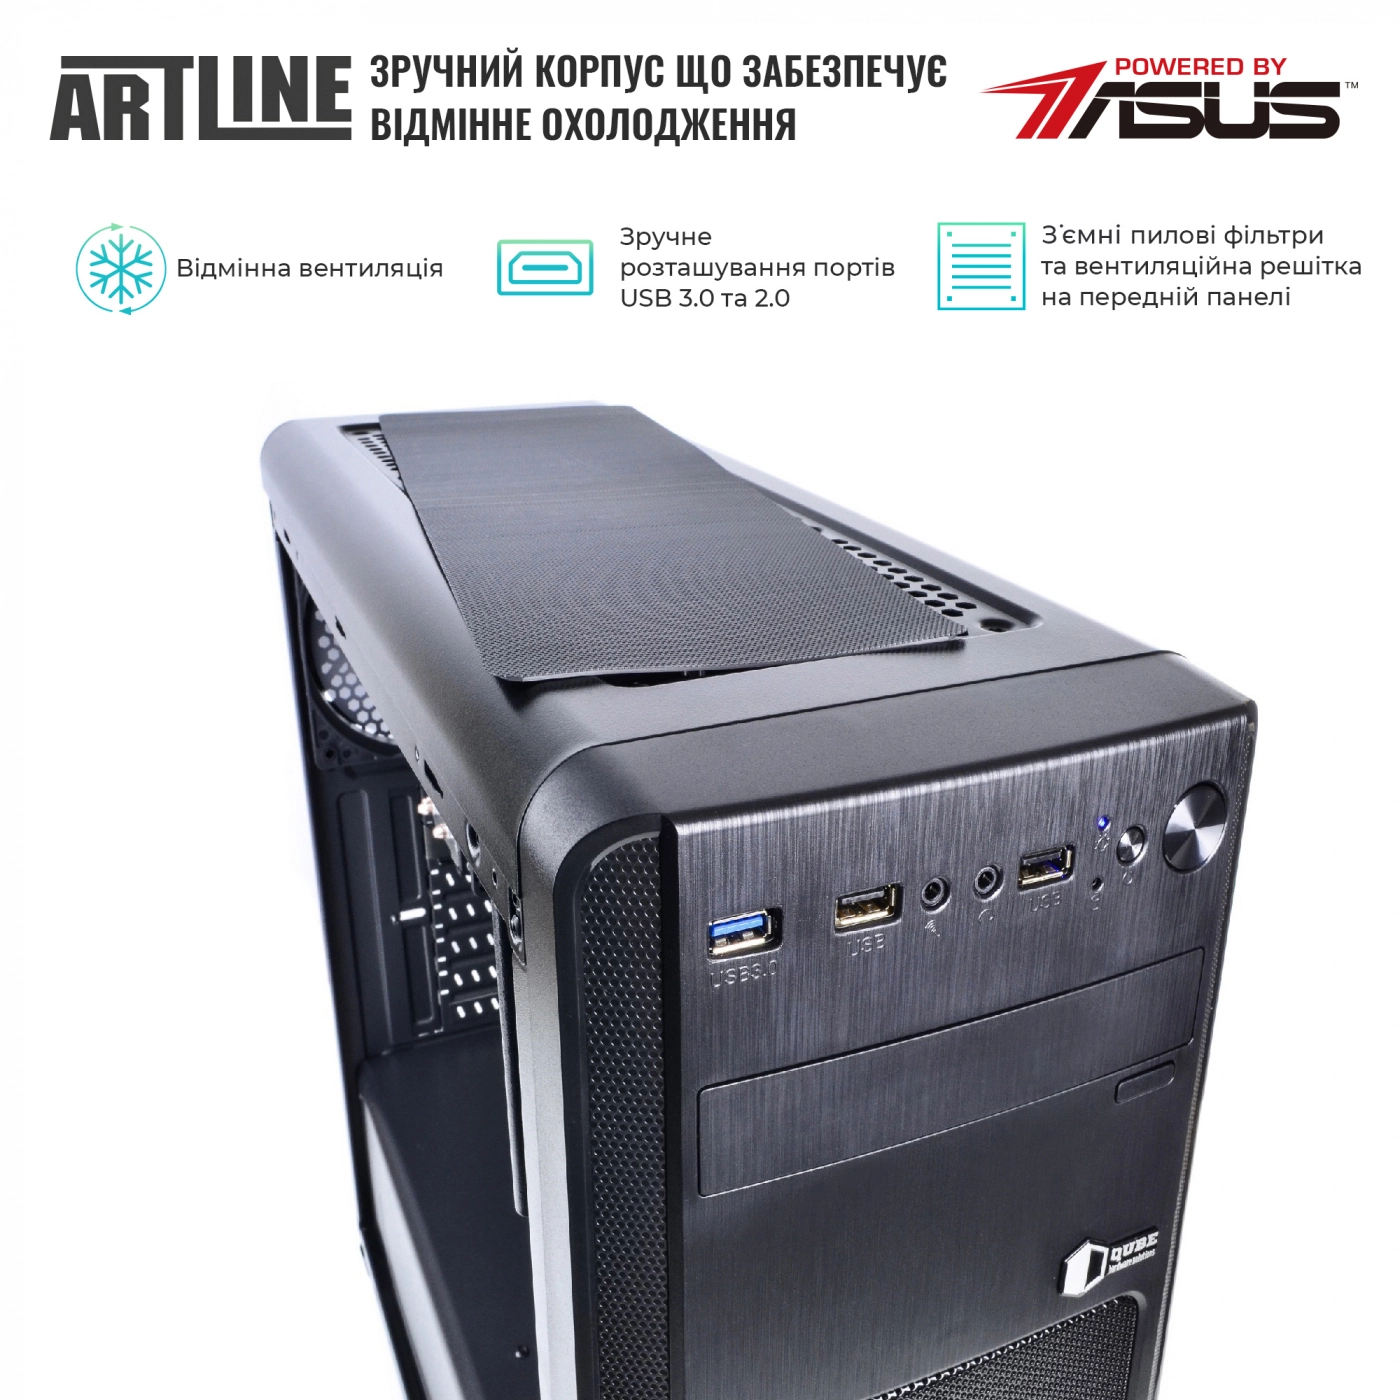 Купить Сервер ARTLINE Business T25v26 - фото 2